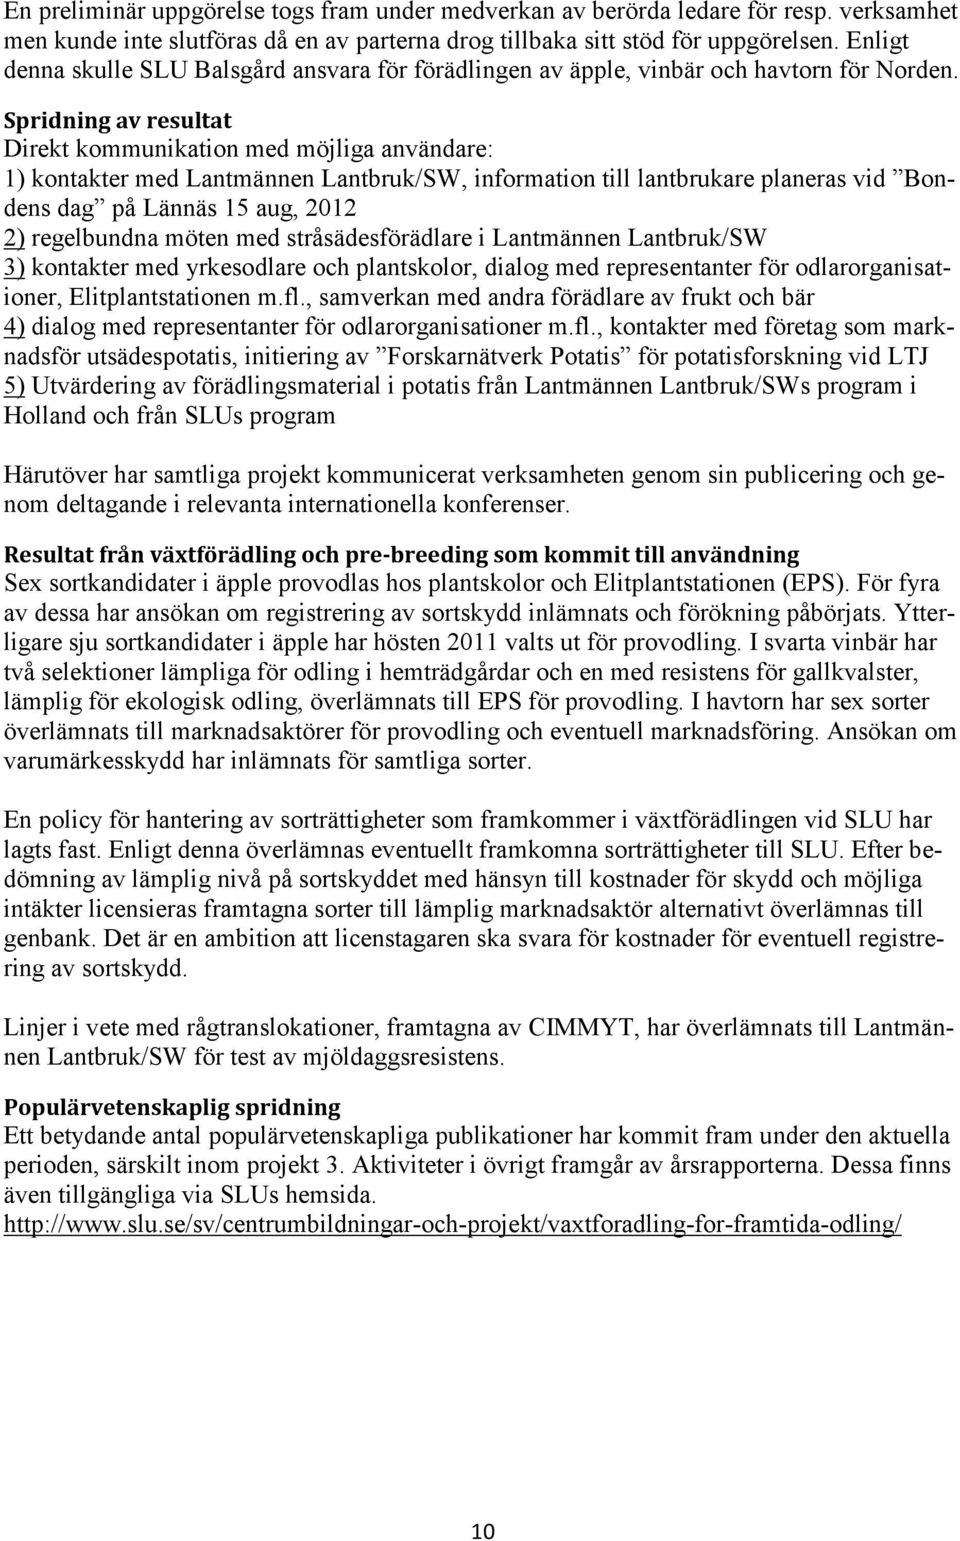 Spridning av resultat Direkt kommunikation med möjliga användare: 1) kontakter med Lantmännen Lantbruk/SW, information till lantbrukare planeras vid Bondens dag på Lännäs 15 aug, 2012 2) regelbundna